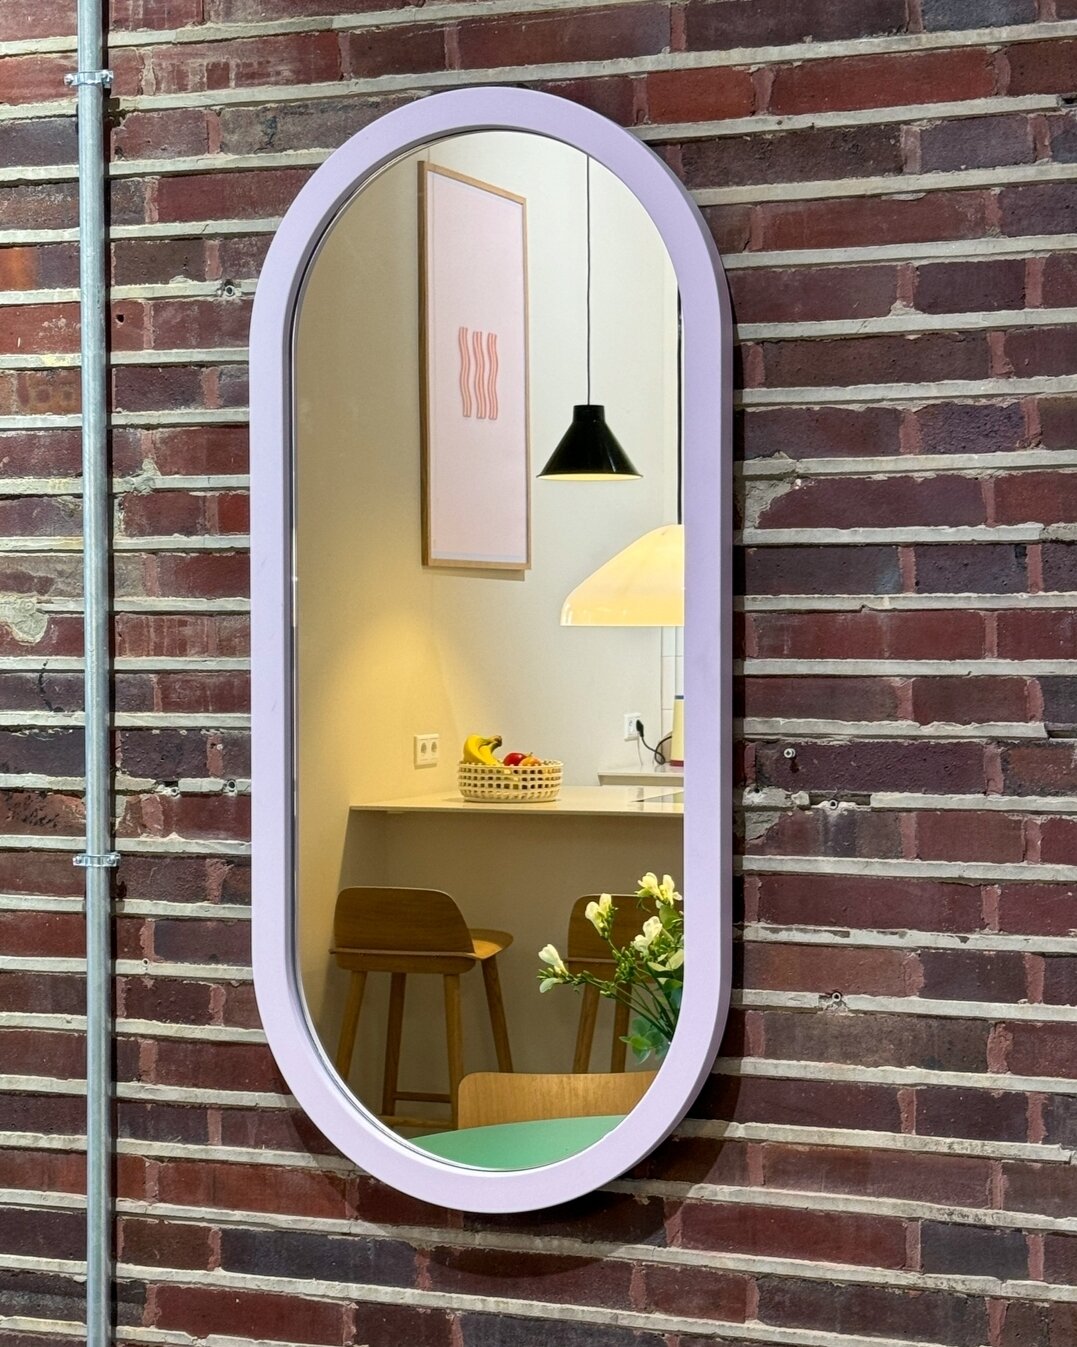 Wandspiegel Loa - Eine schlichte Form und eine tolle Farbauswahl machen Loa auch bei dir zu Hause zu einem Hingucker. Schau dir den Spiegel gerne in unserem Showroom an. 

#donnerblitzdesign #dbd #designstudio #m&uuml;nsterdesign #productdesign #inte